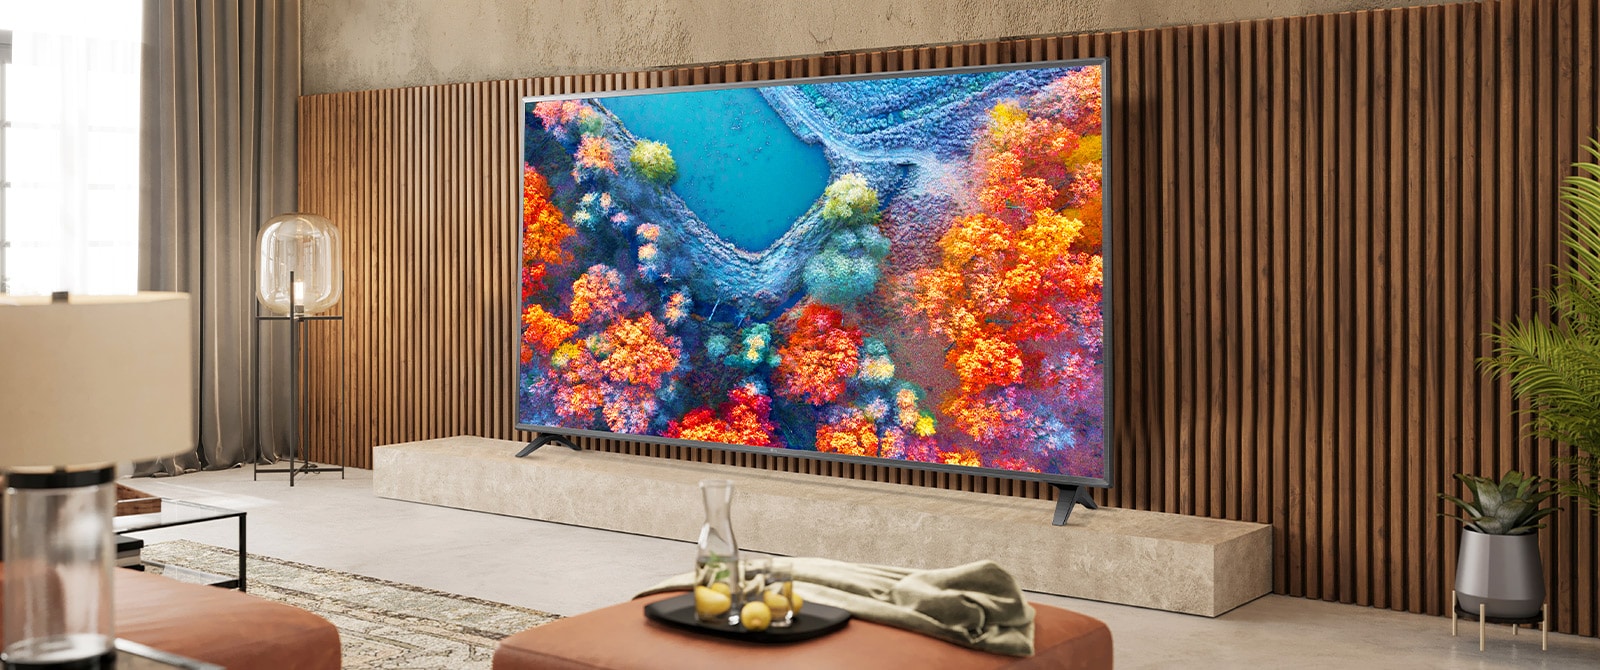 W pokoju dziennym znajduje się telewizor z cienką ramką, którego żywy ekran doskonale komponuje się z wystrojem wnętrza.